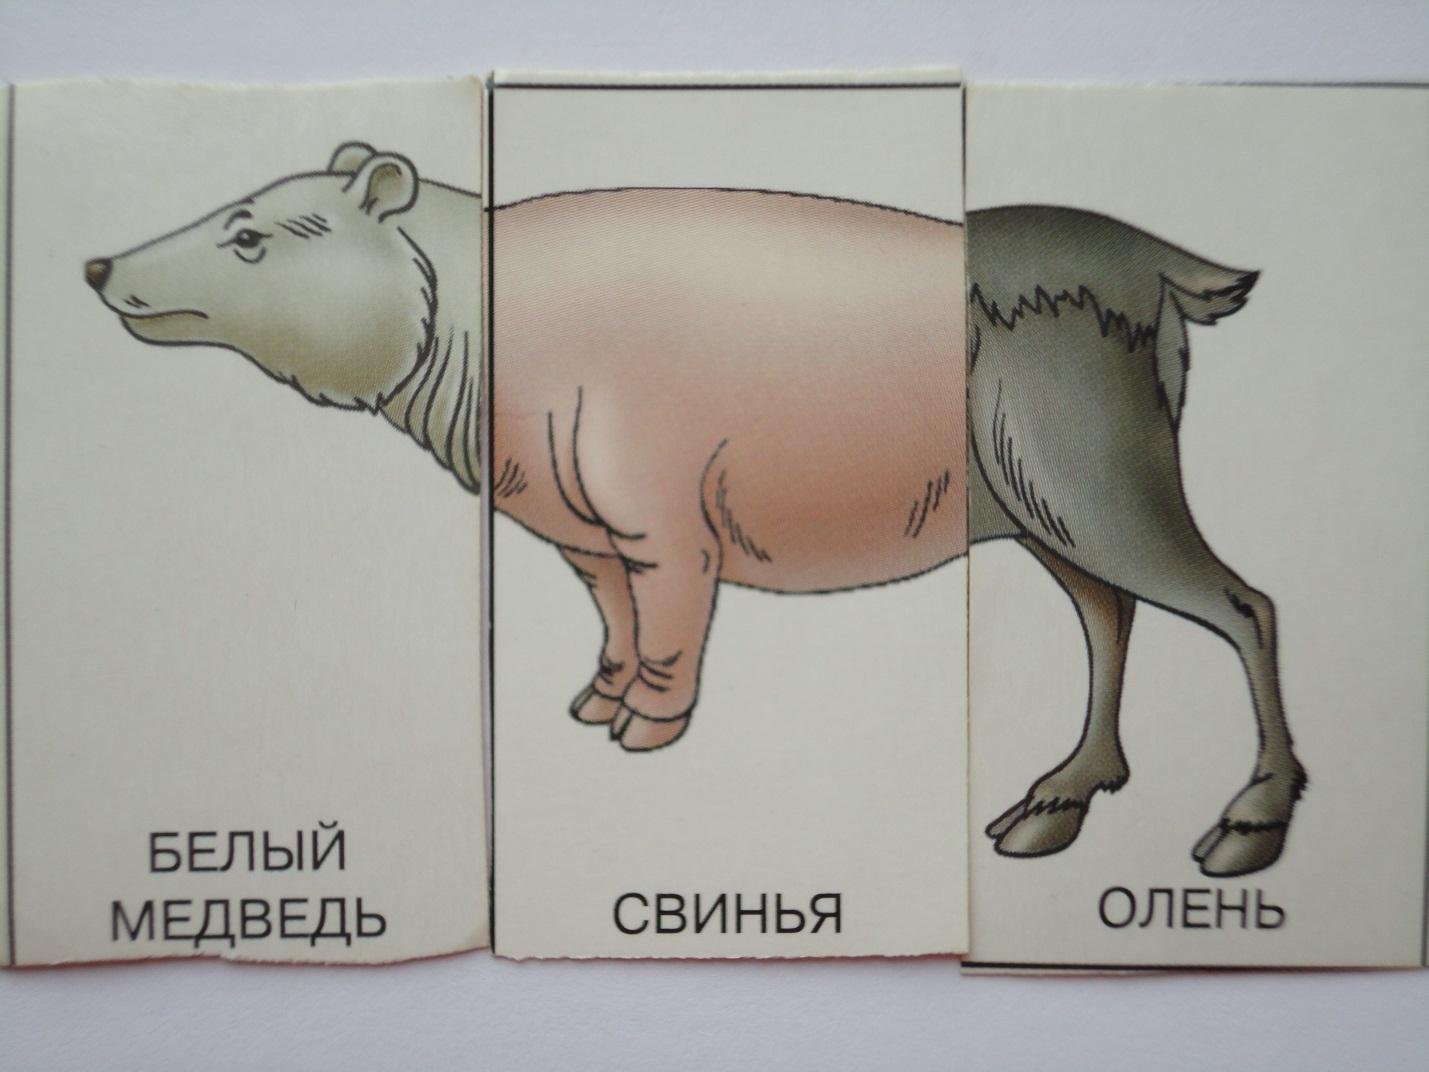 Рисунок животного состоящего из частей разных животных